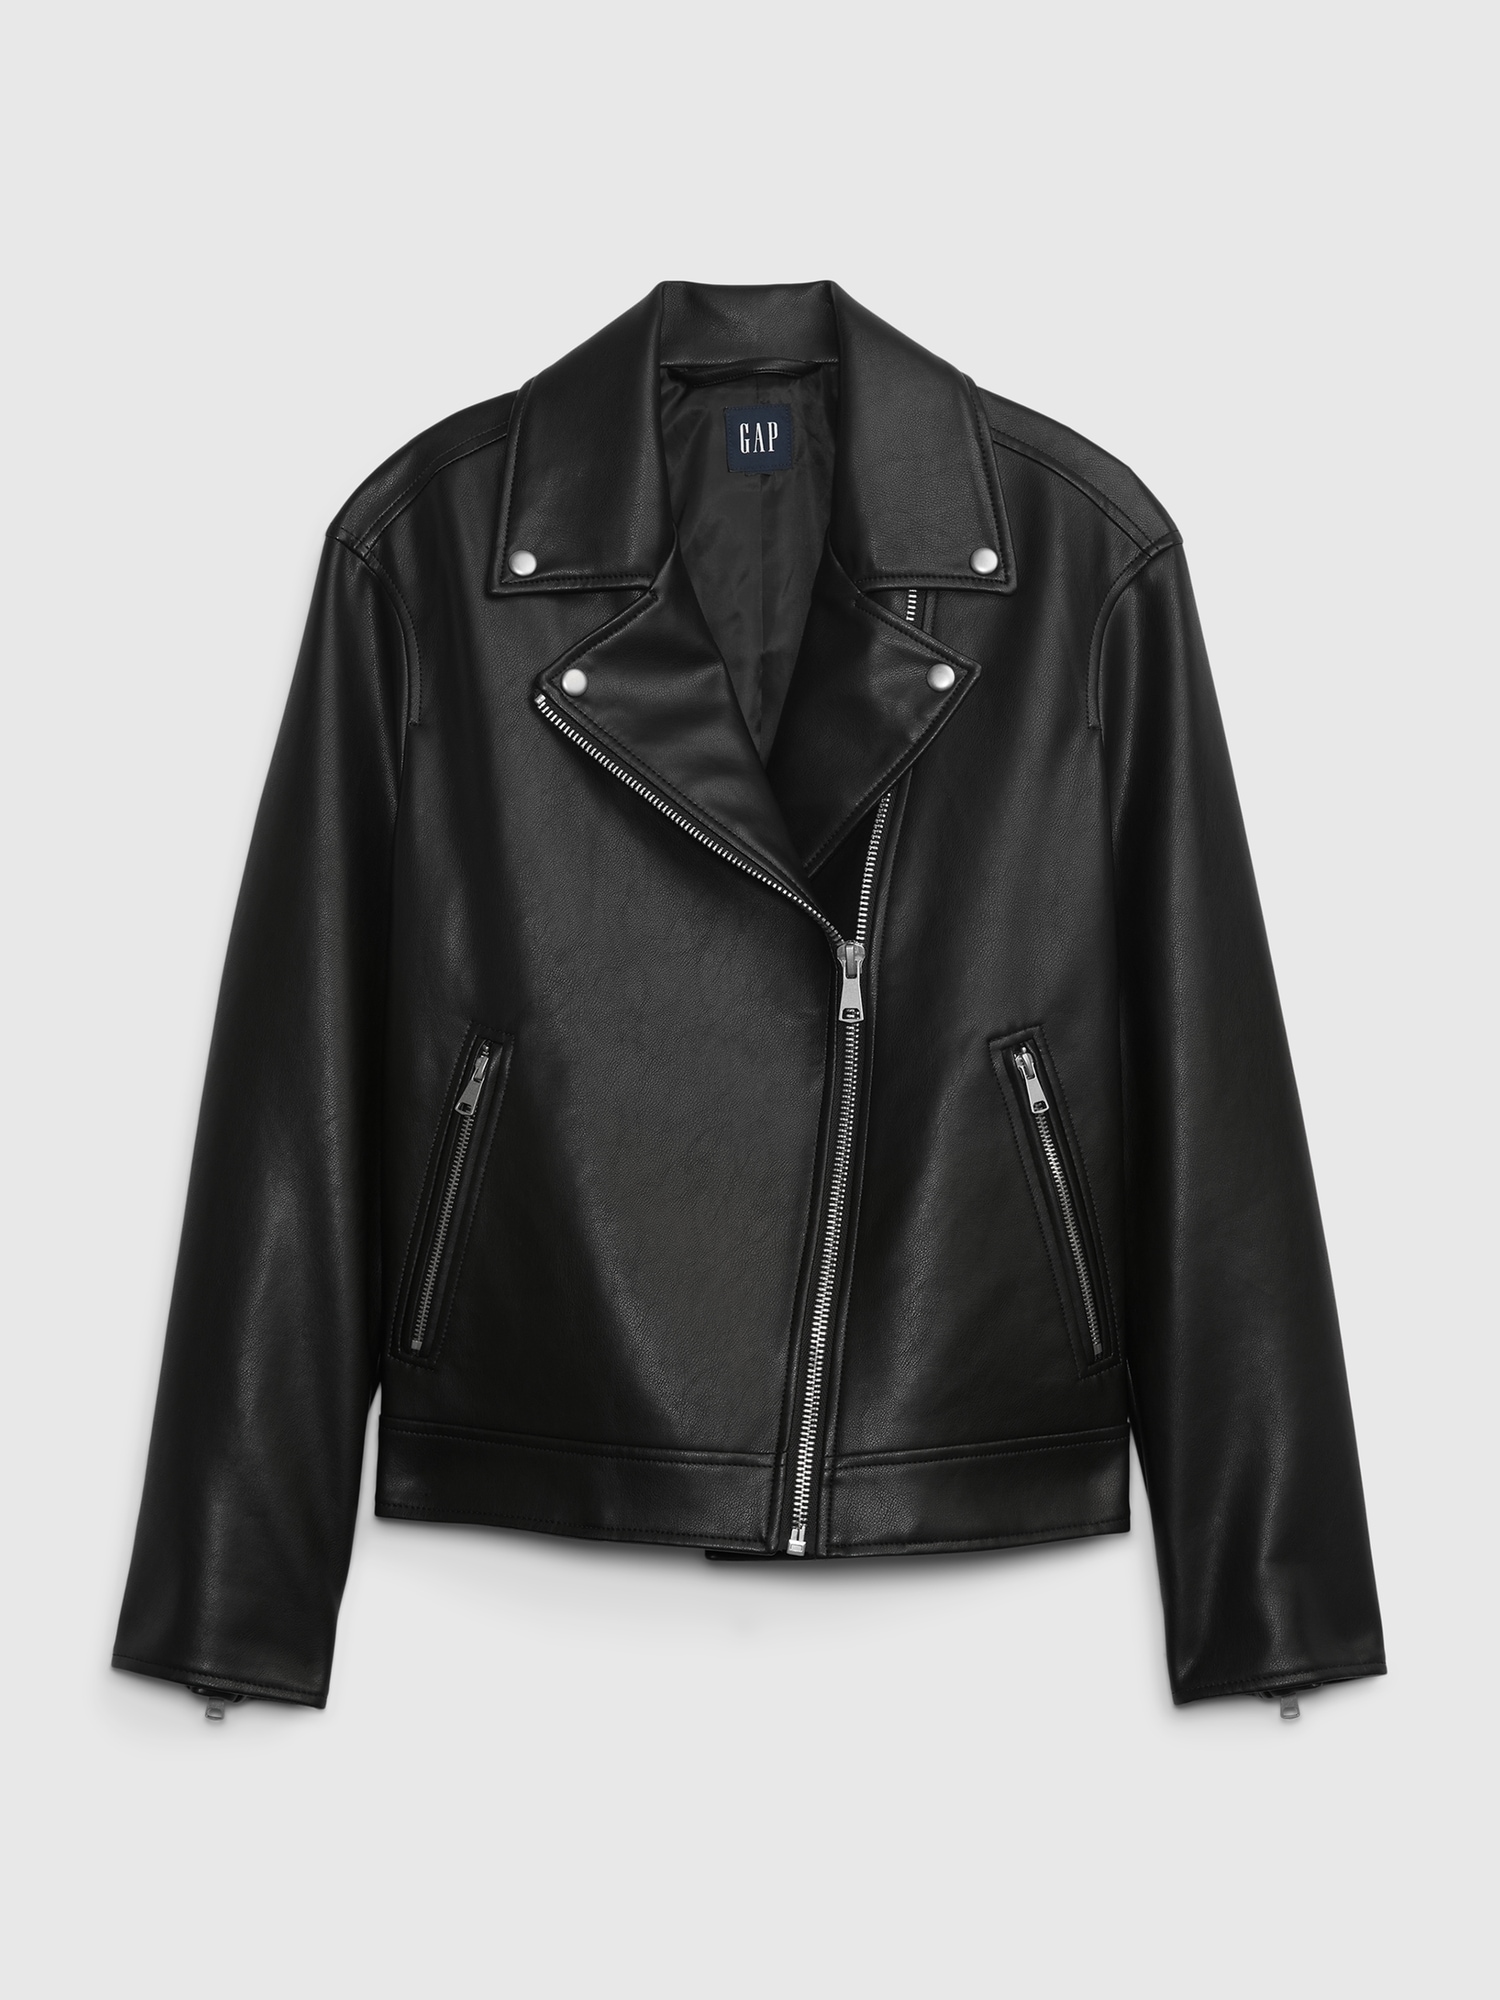 Women black leather jacket & Girls black biker leather western warm jacket  #72 | eBay